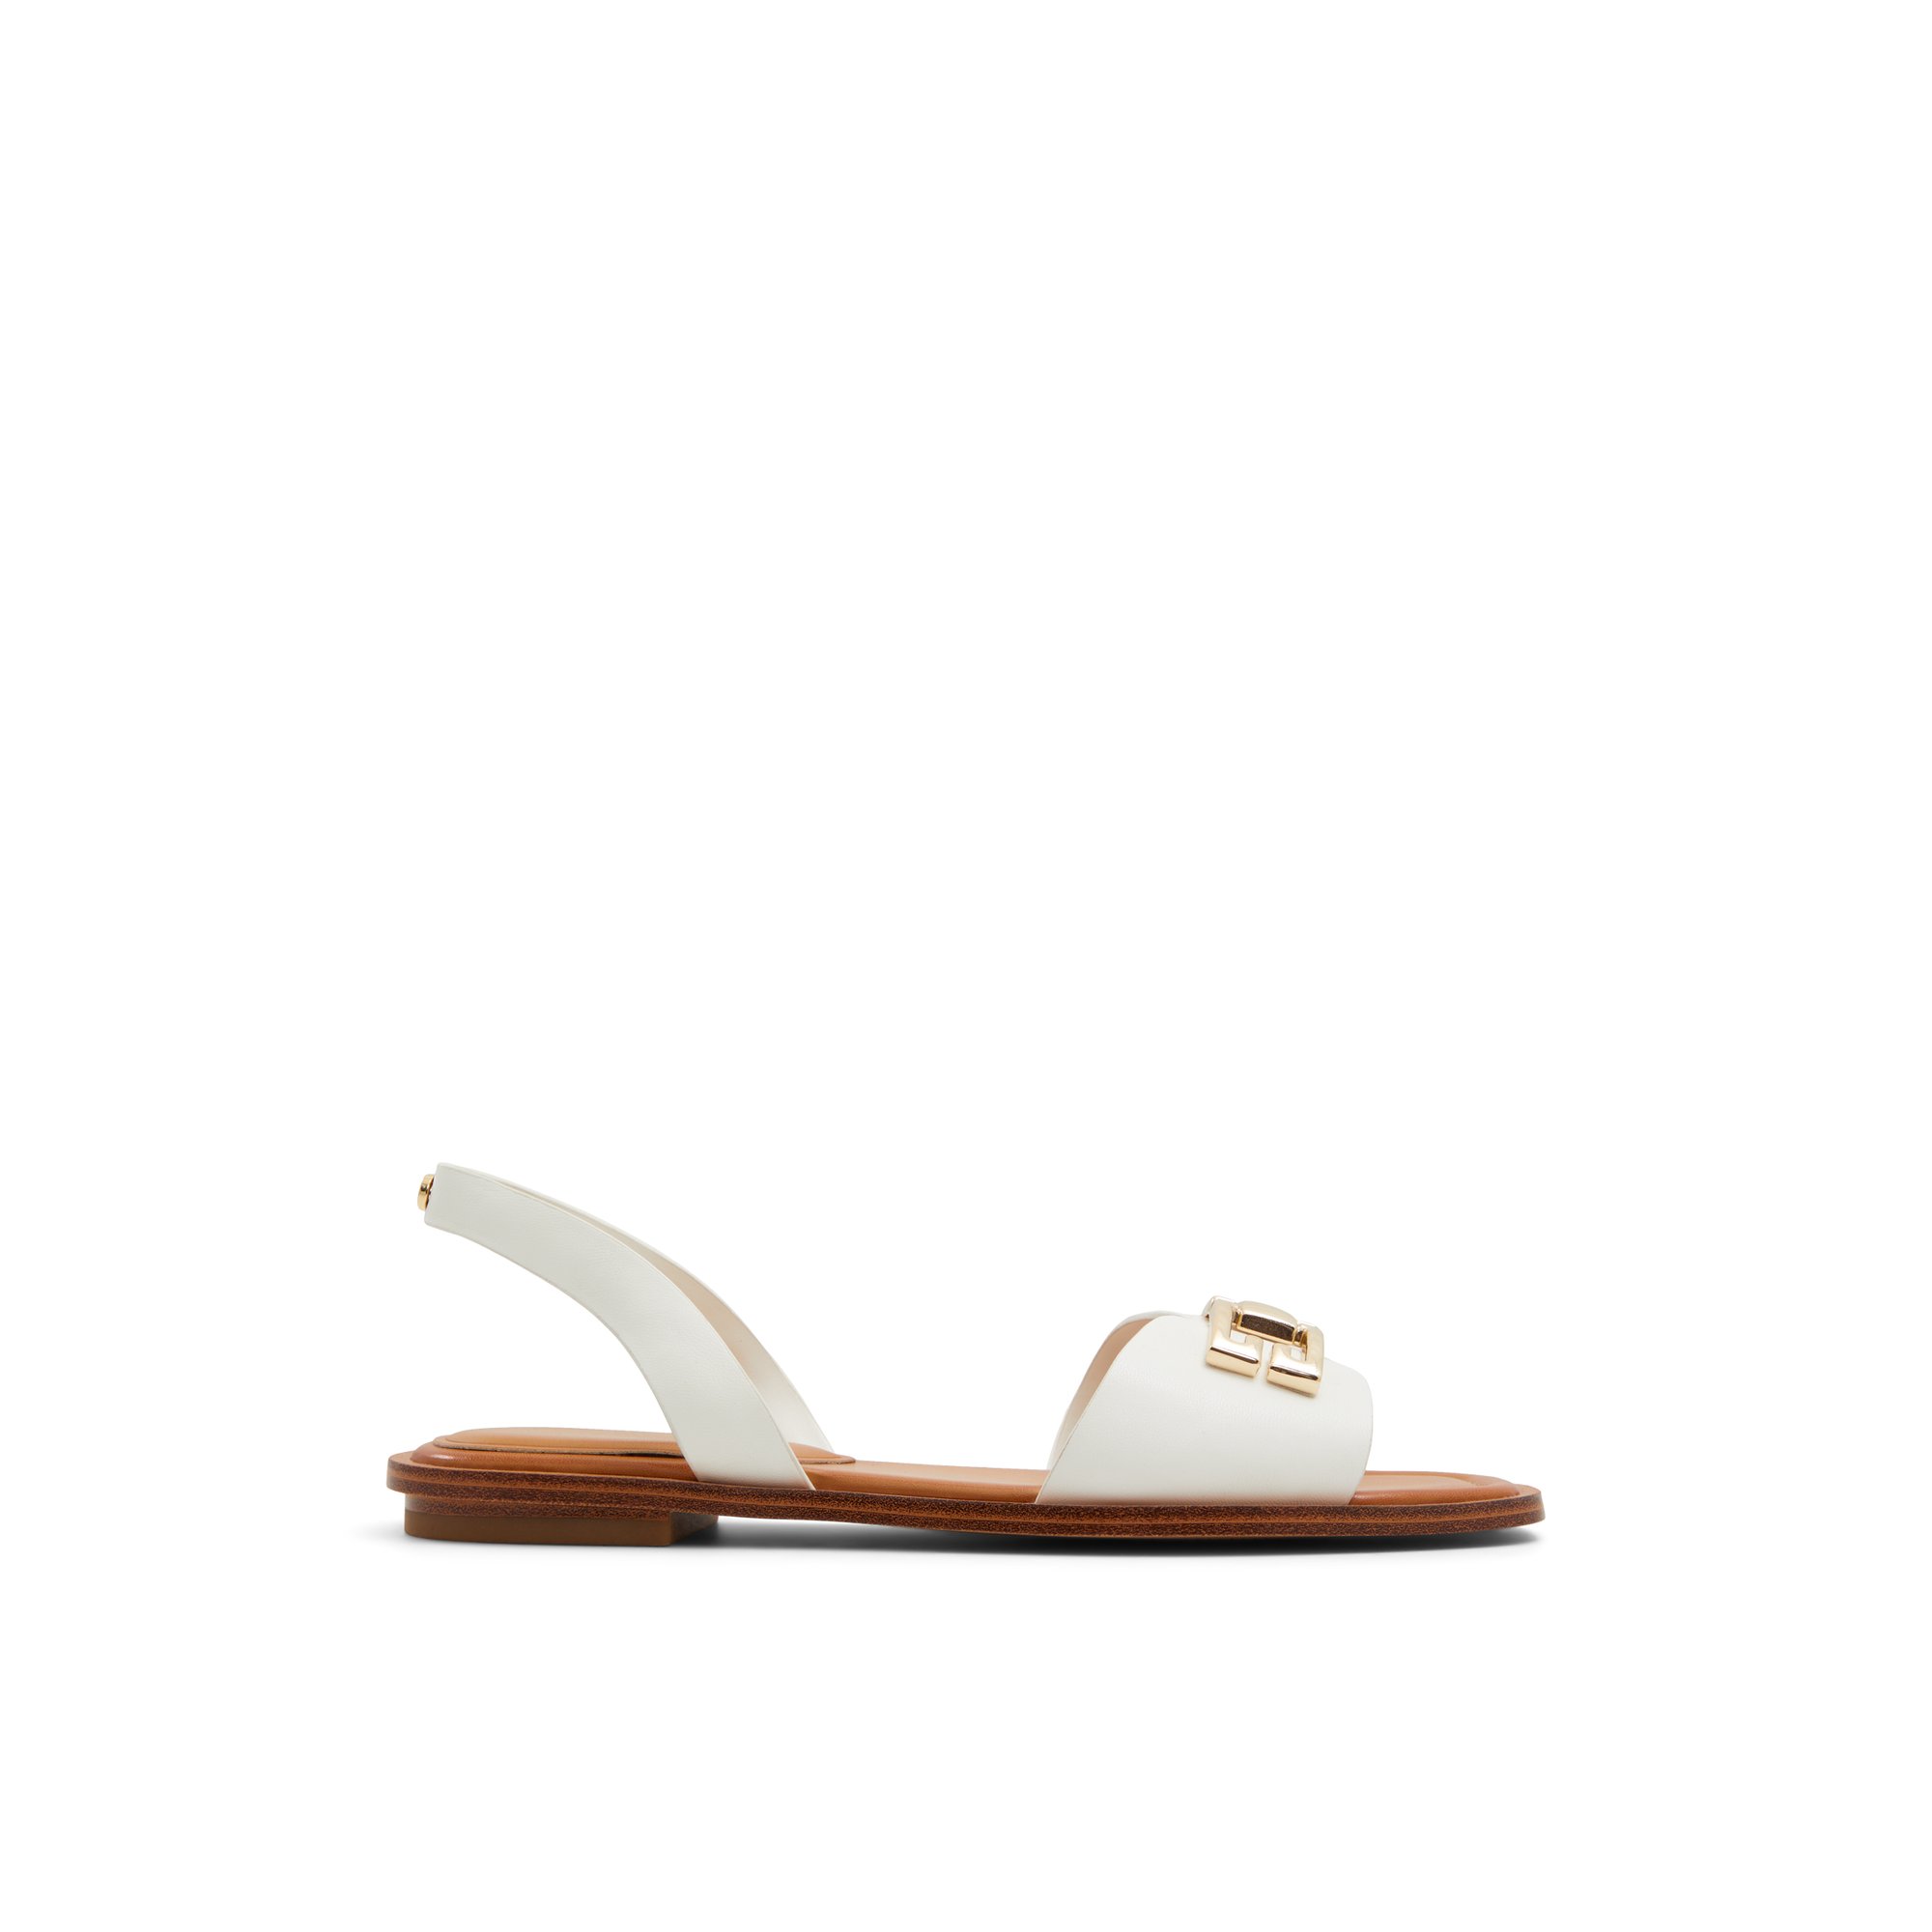 ALDO Agreinwan - Women's Sandals Flats - White